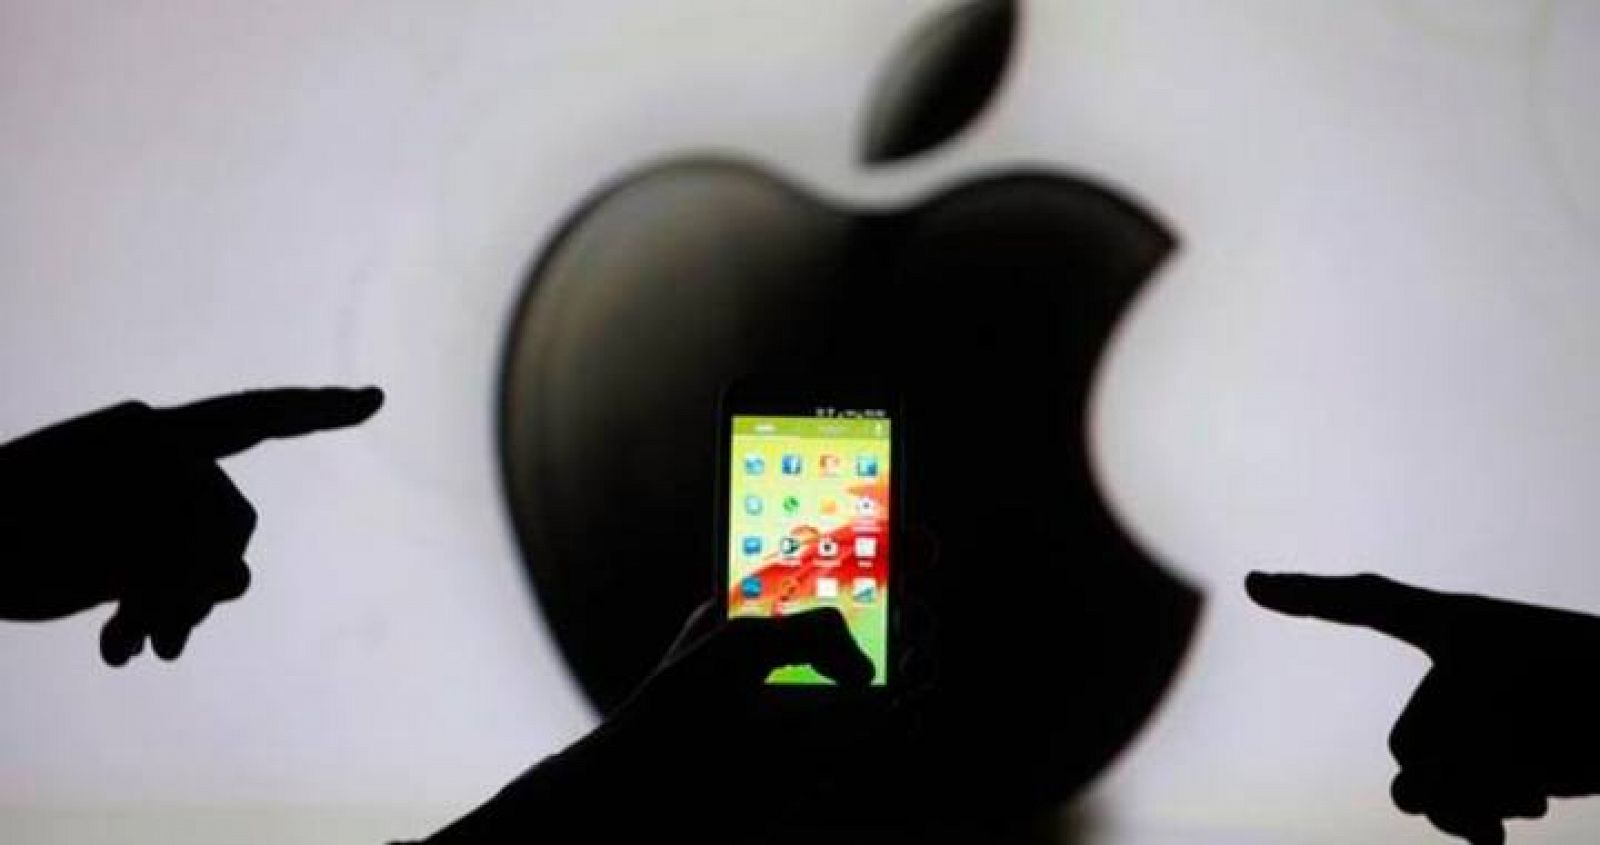  El gigante de telecomunicaciones estadounidense Apple, ha registrado una caída en sus beneficios por primera vez en 11 años